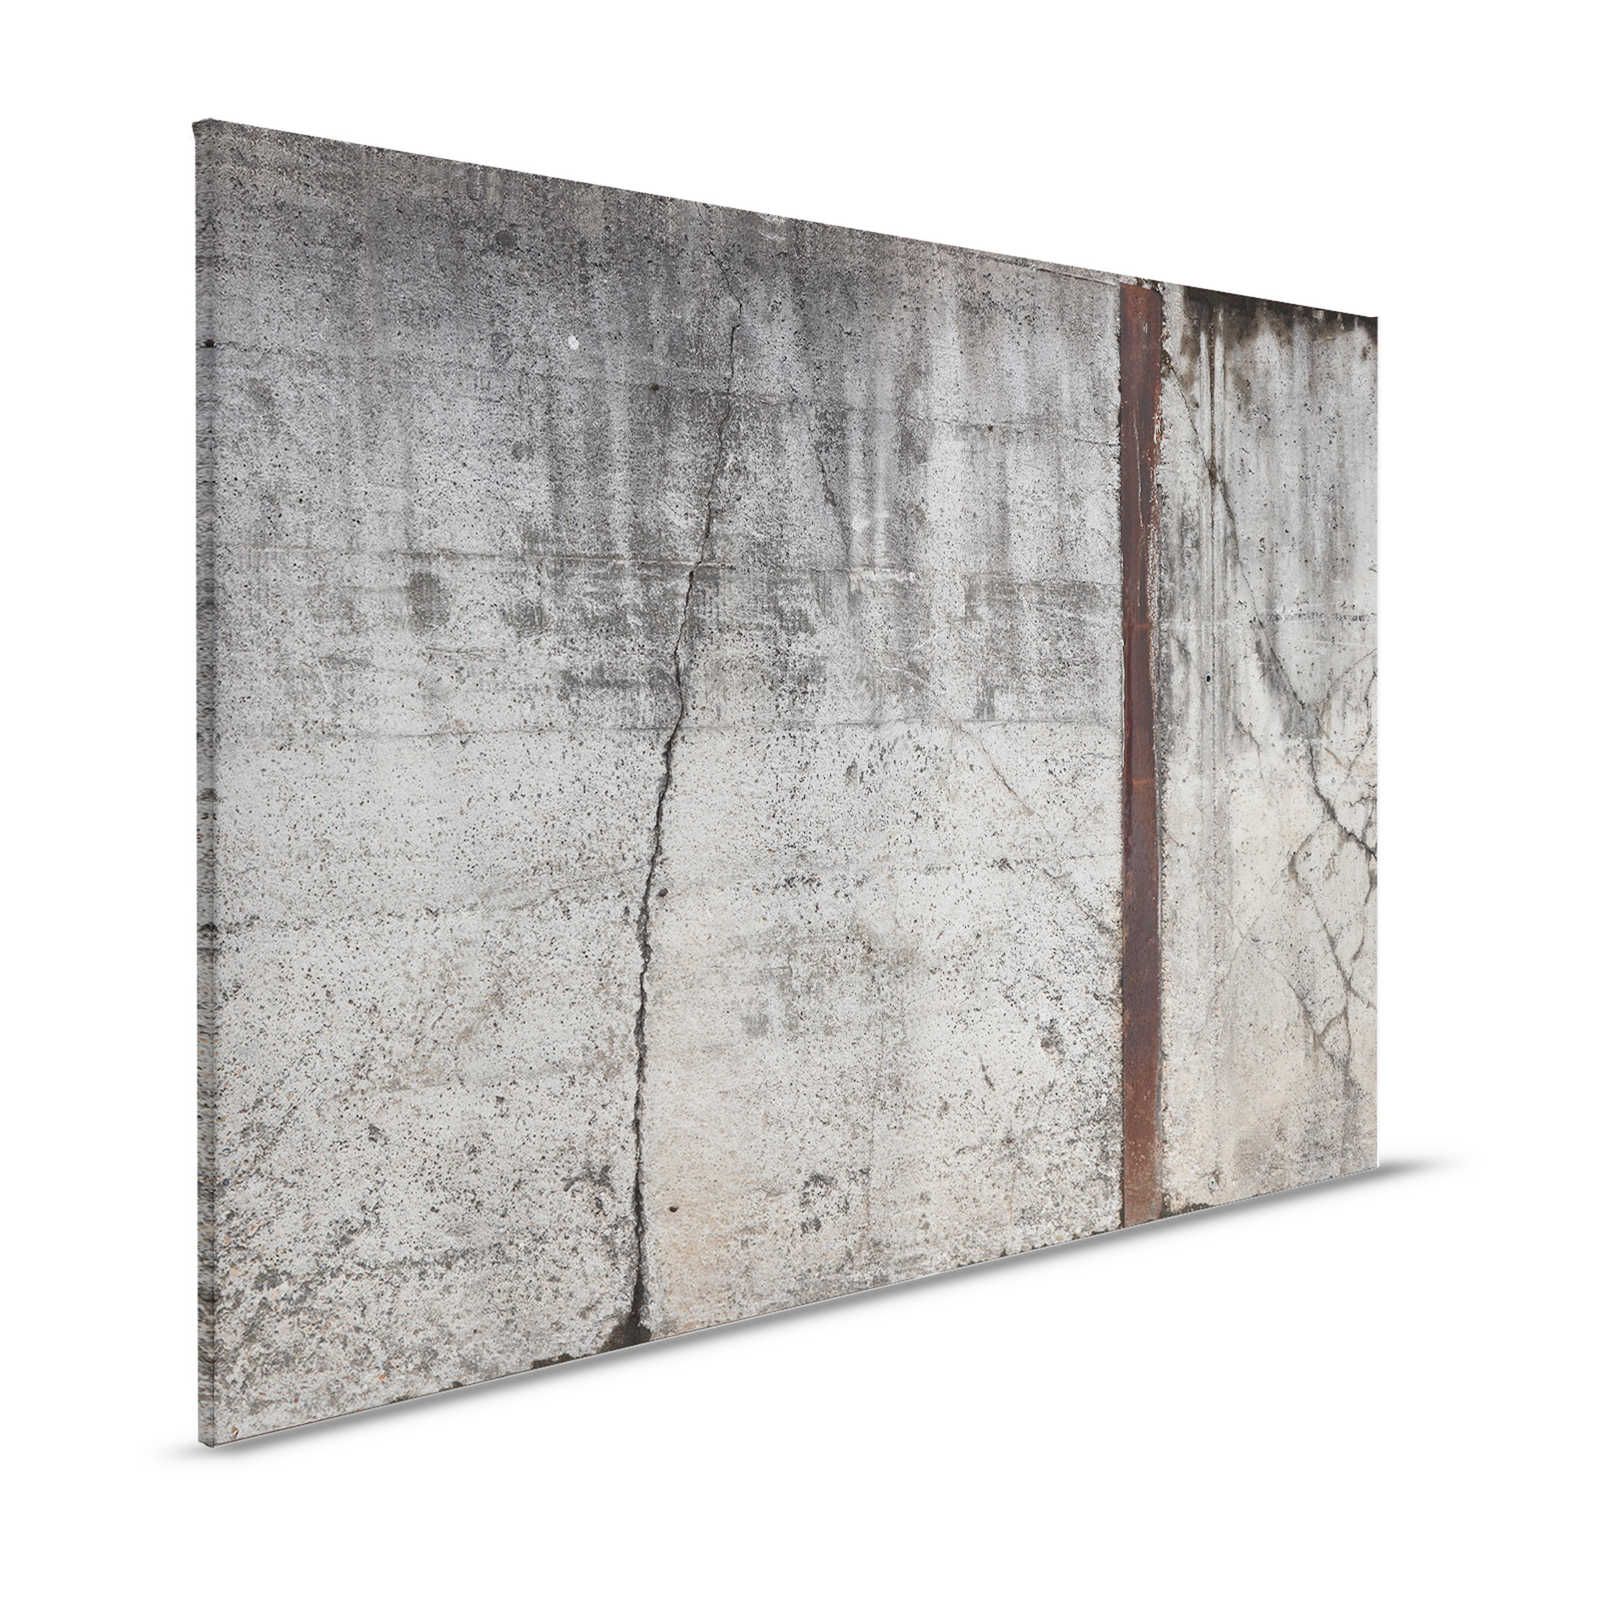 Lienzo Pintura concreto Estilo Rústico Muro concreto Armado - 1,20 m x 0,80 m
